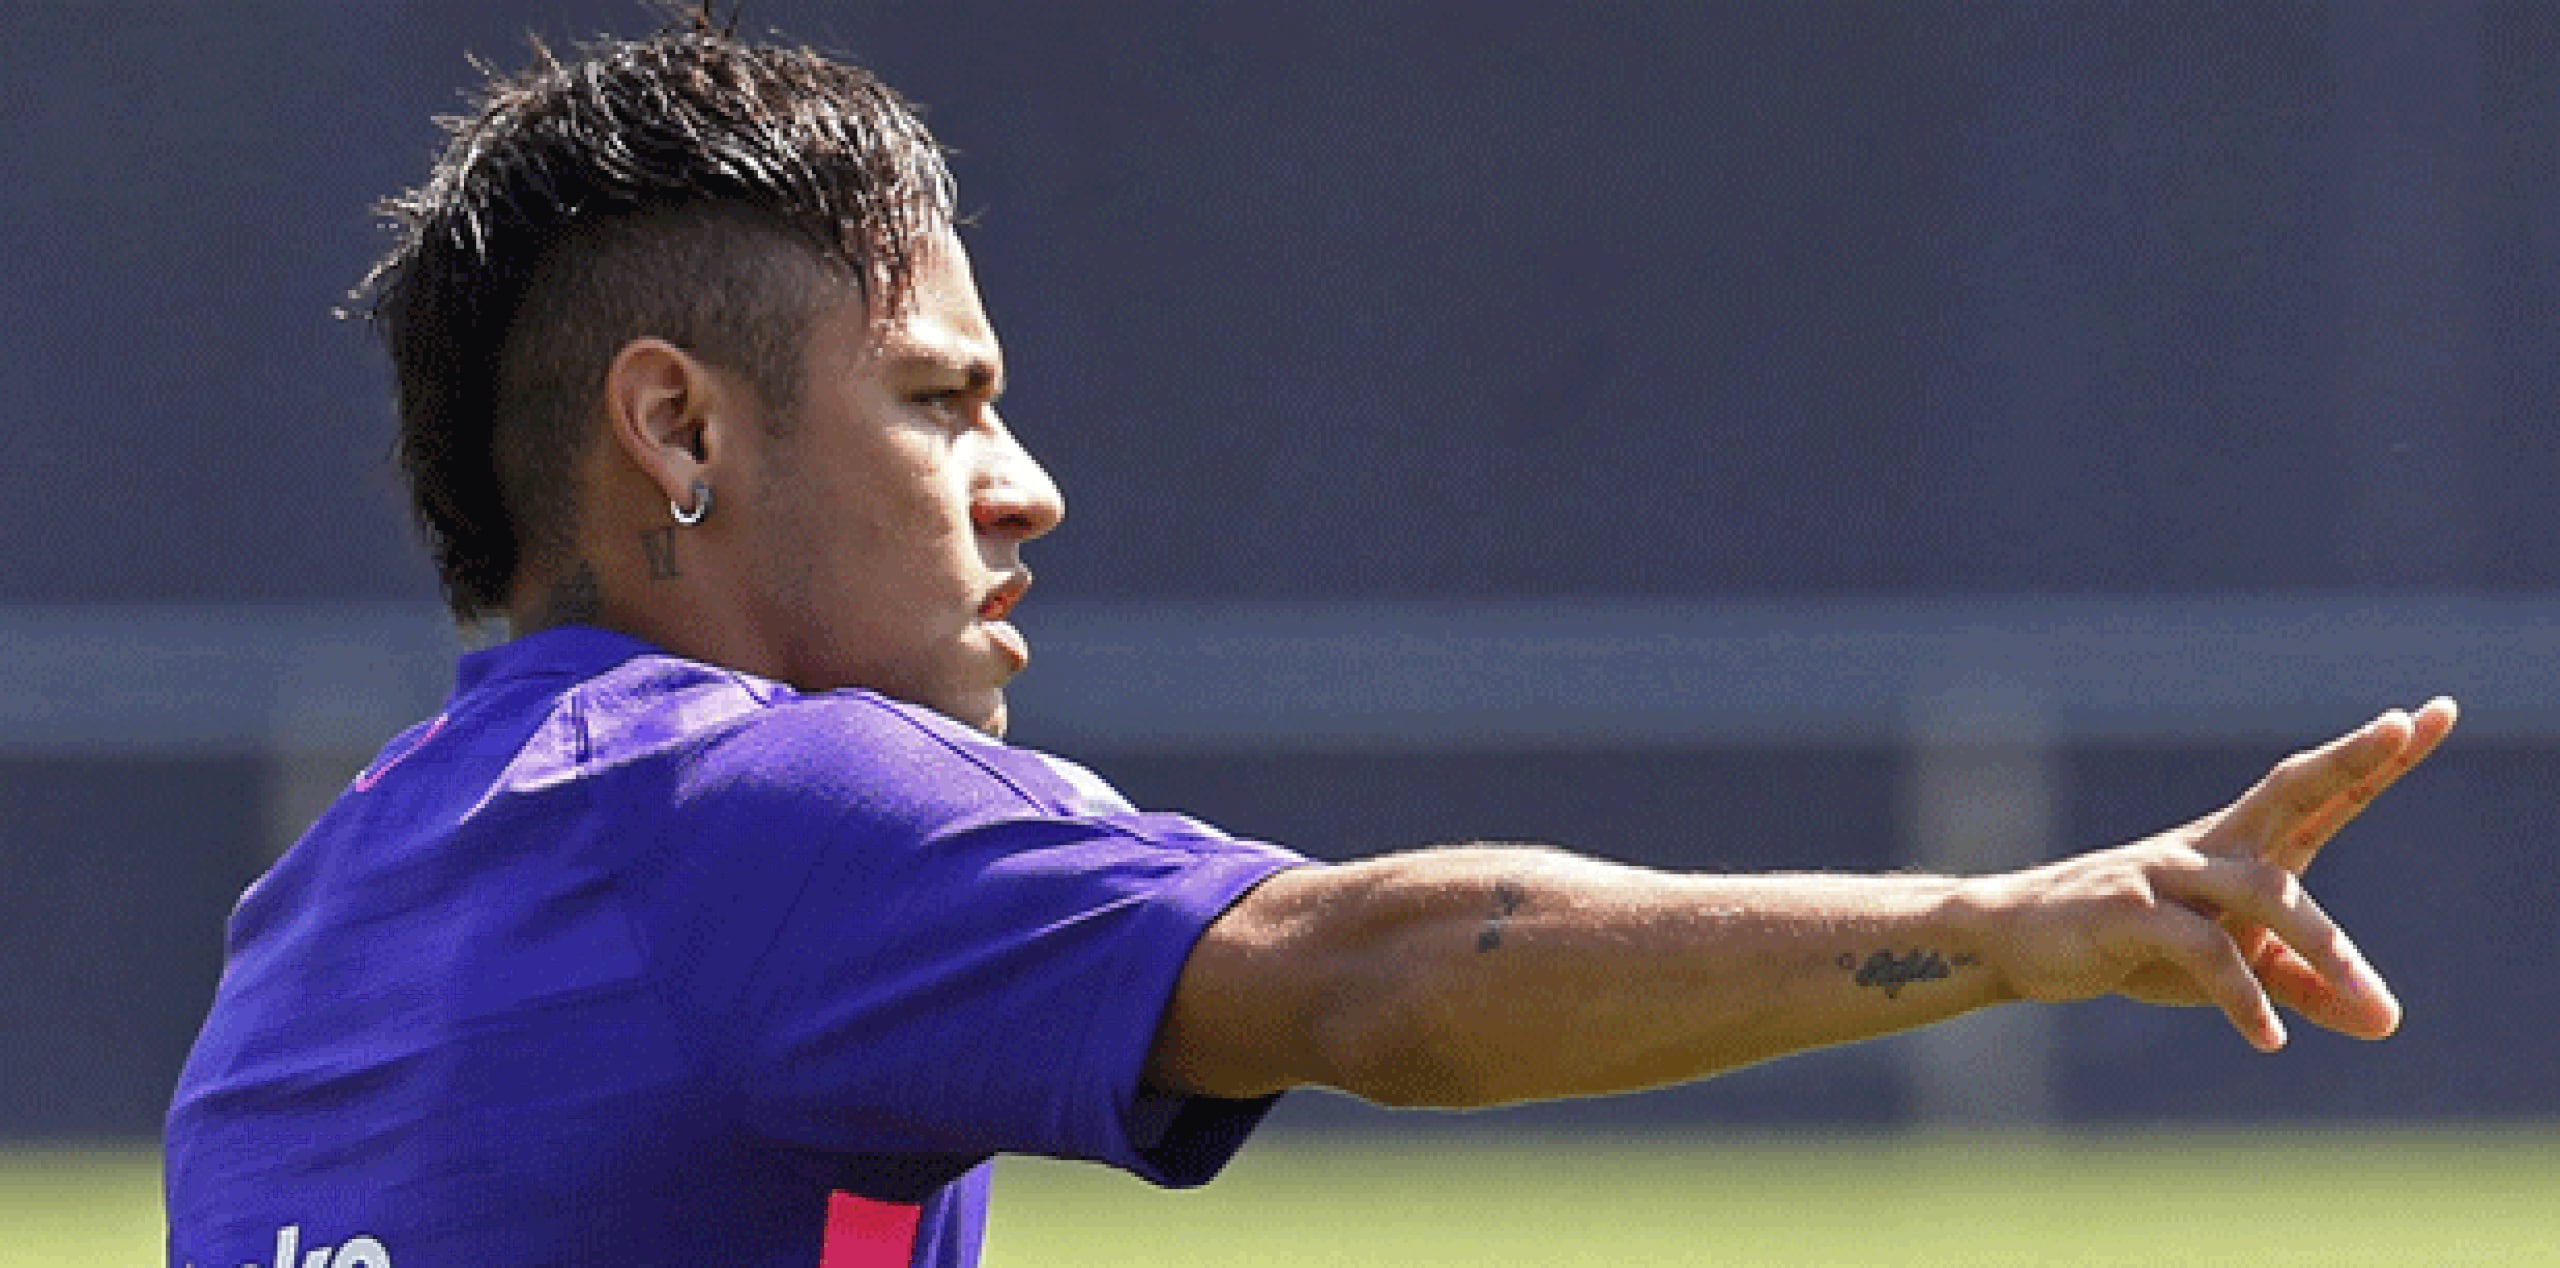 Roma, quien lagrimeó al hablar de Neymar, afirmó que el club decidió acudir a la FIFA luego de que su departamento legal determinó que debería haber recibido mucho más dinero por el pase. (Archivo)